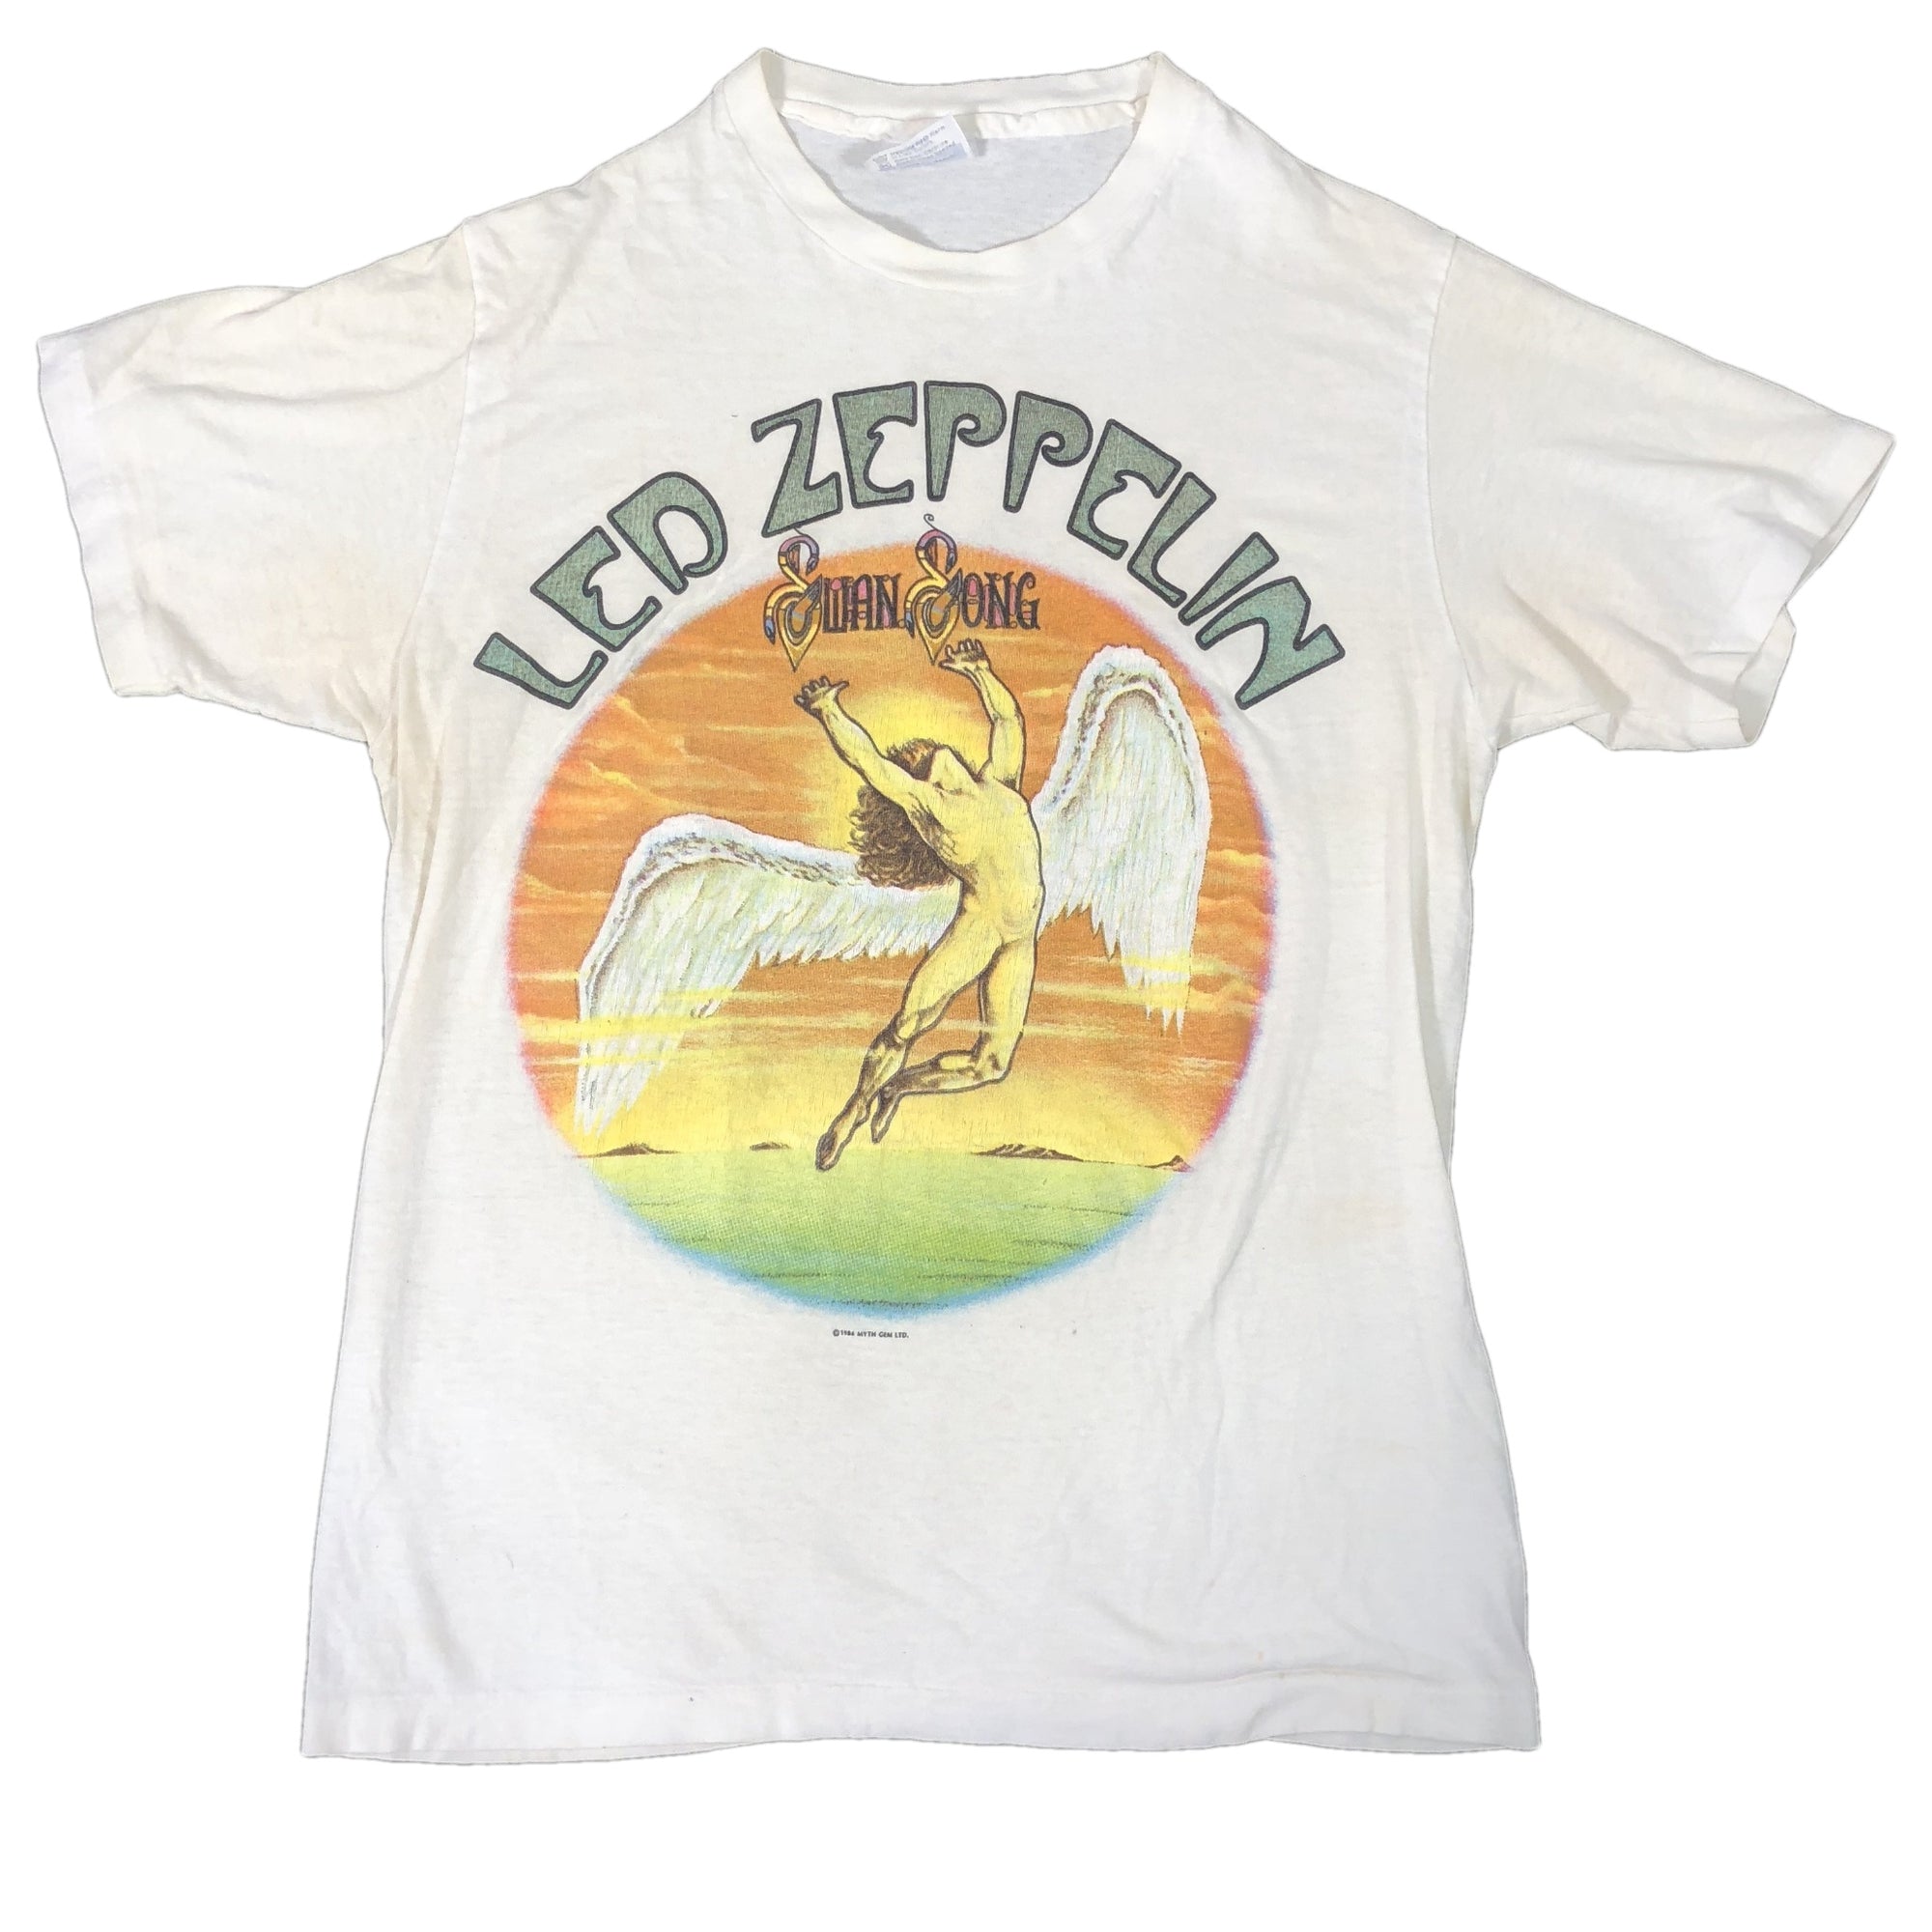 Vintage Led Zeppelin "Swan Song" T-Shirt - jointcustodydc